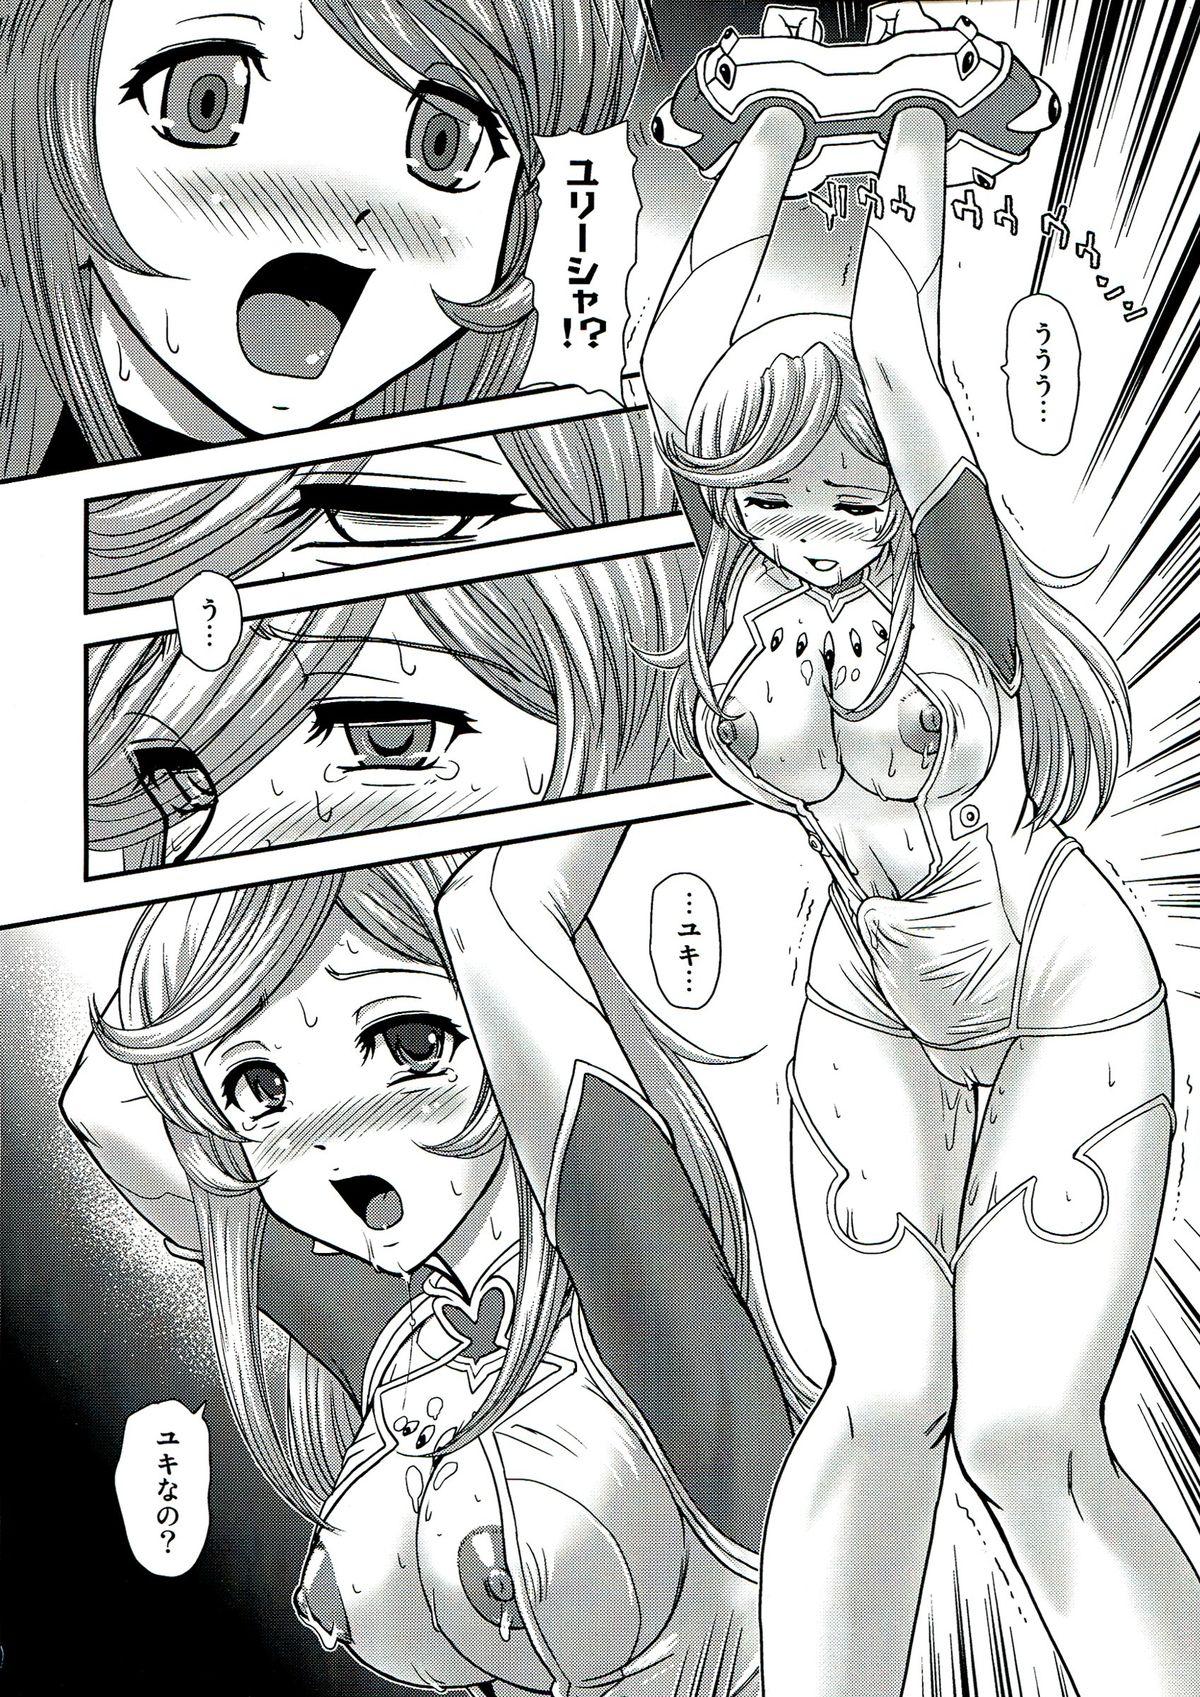 Boy Girl YAMATO 2199 Alternative - 2 Reputapouda Jinmon Shitsu - Space battleship yamato Mother fuck - Page 8